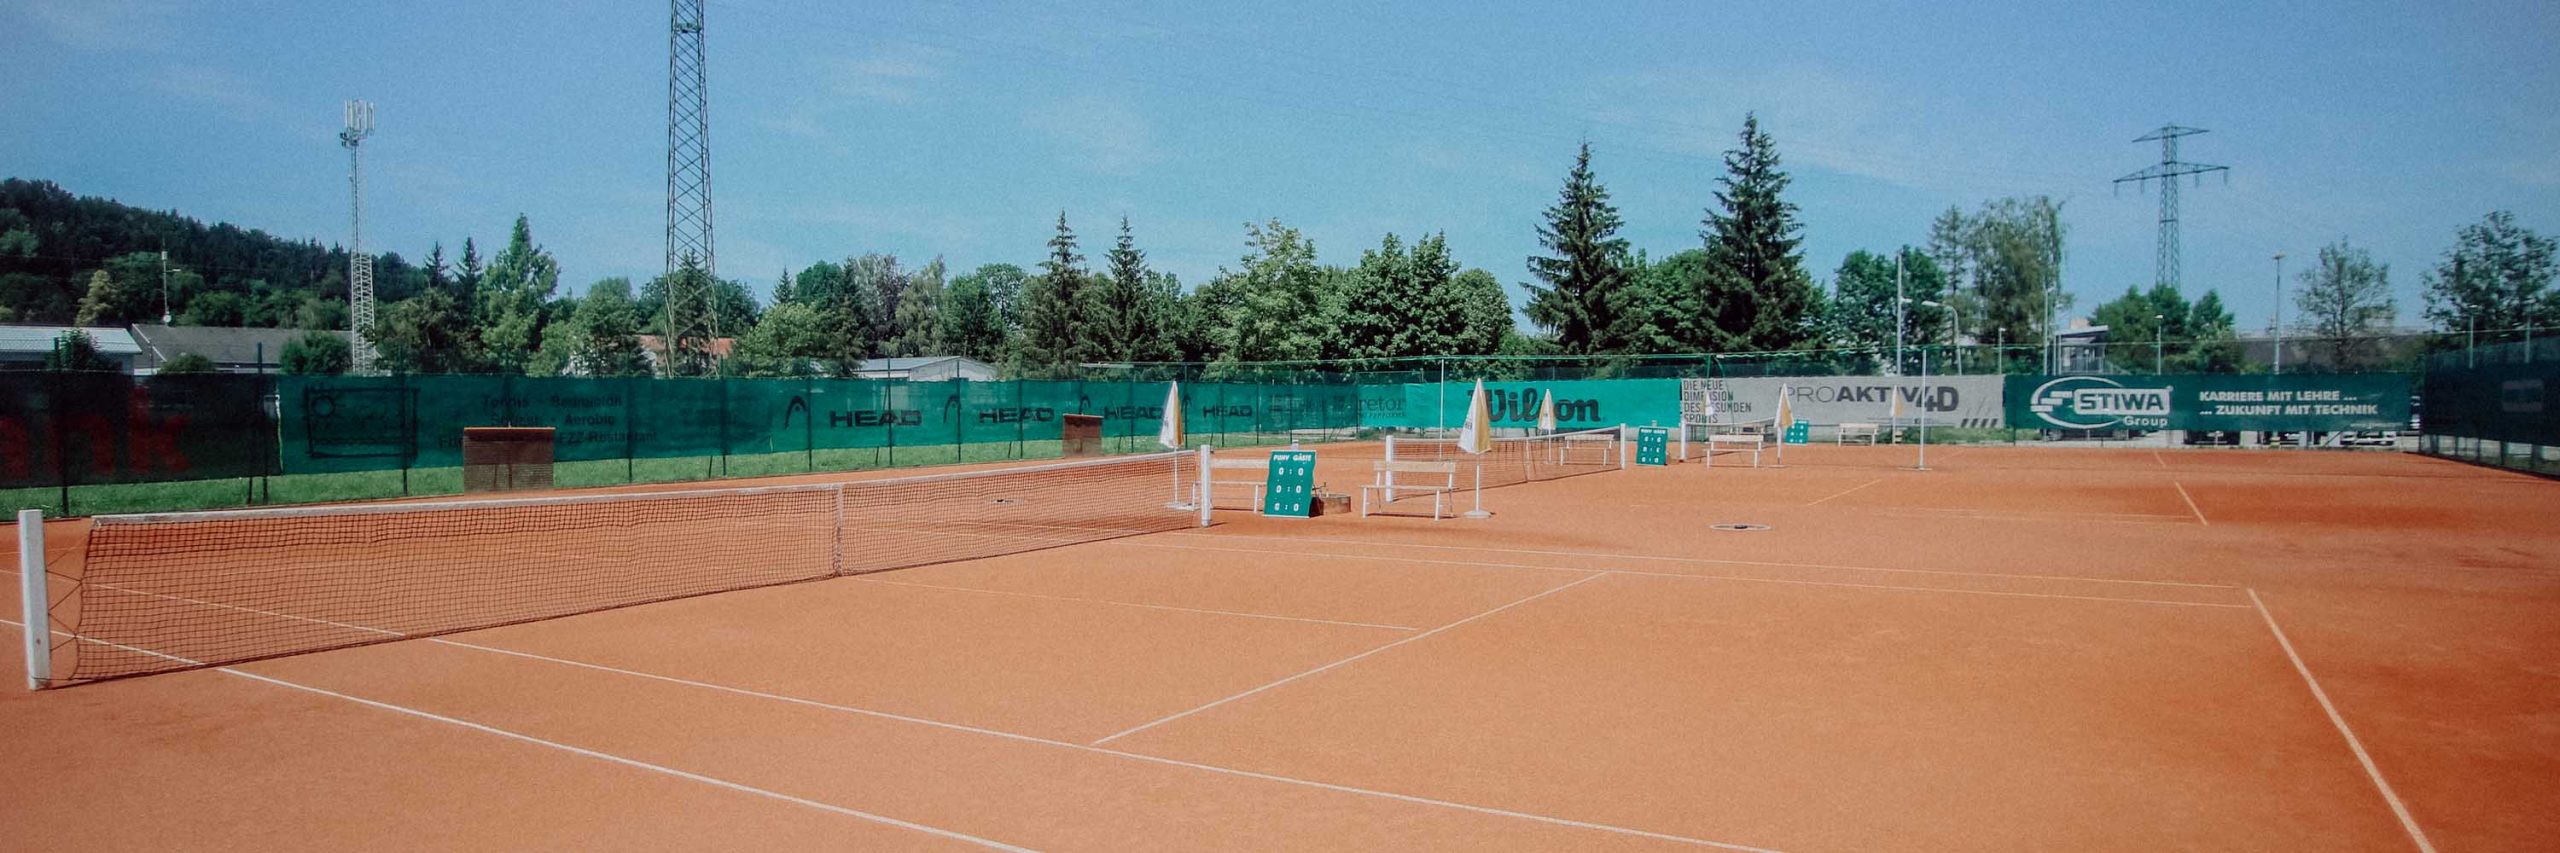 Tennisplatz_2